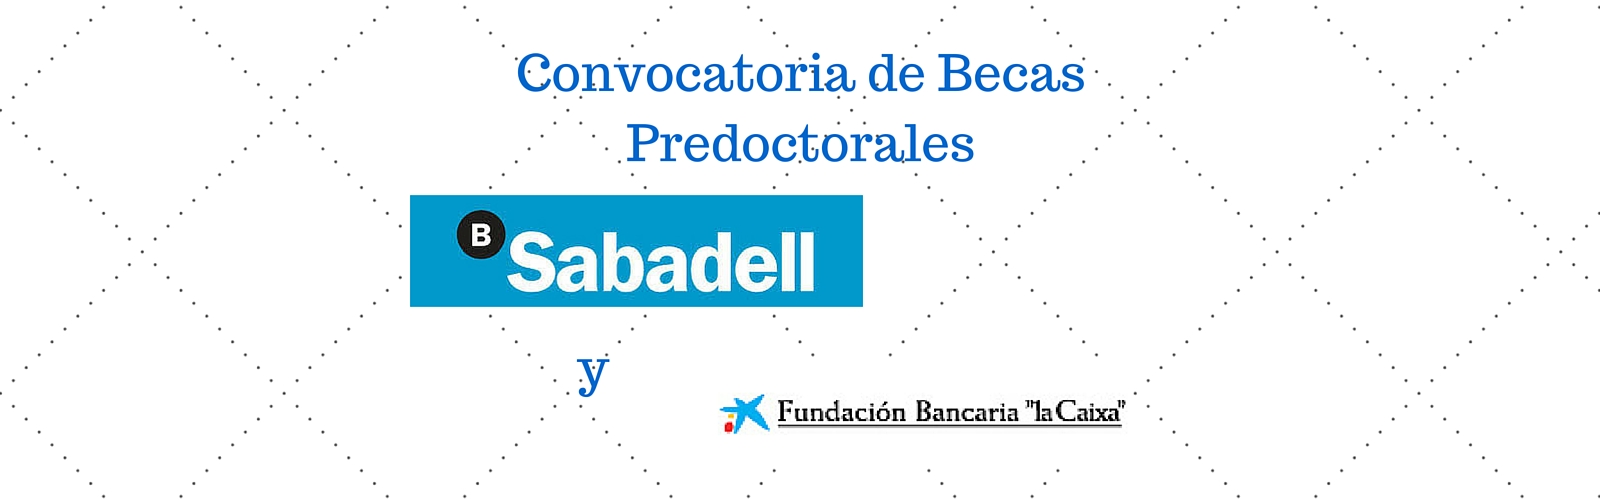 Convocatoria de Becas Predoctorales Banco Sabadell y Fundación la Caixa